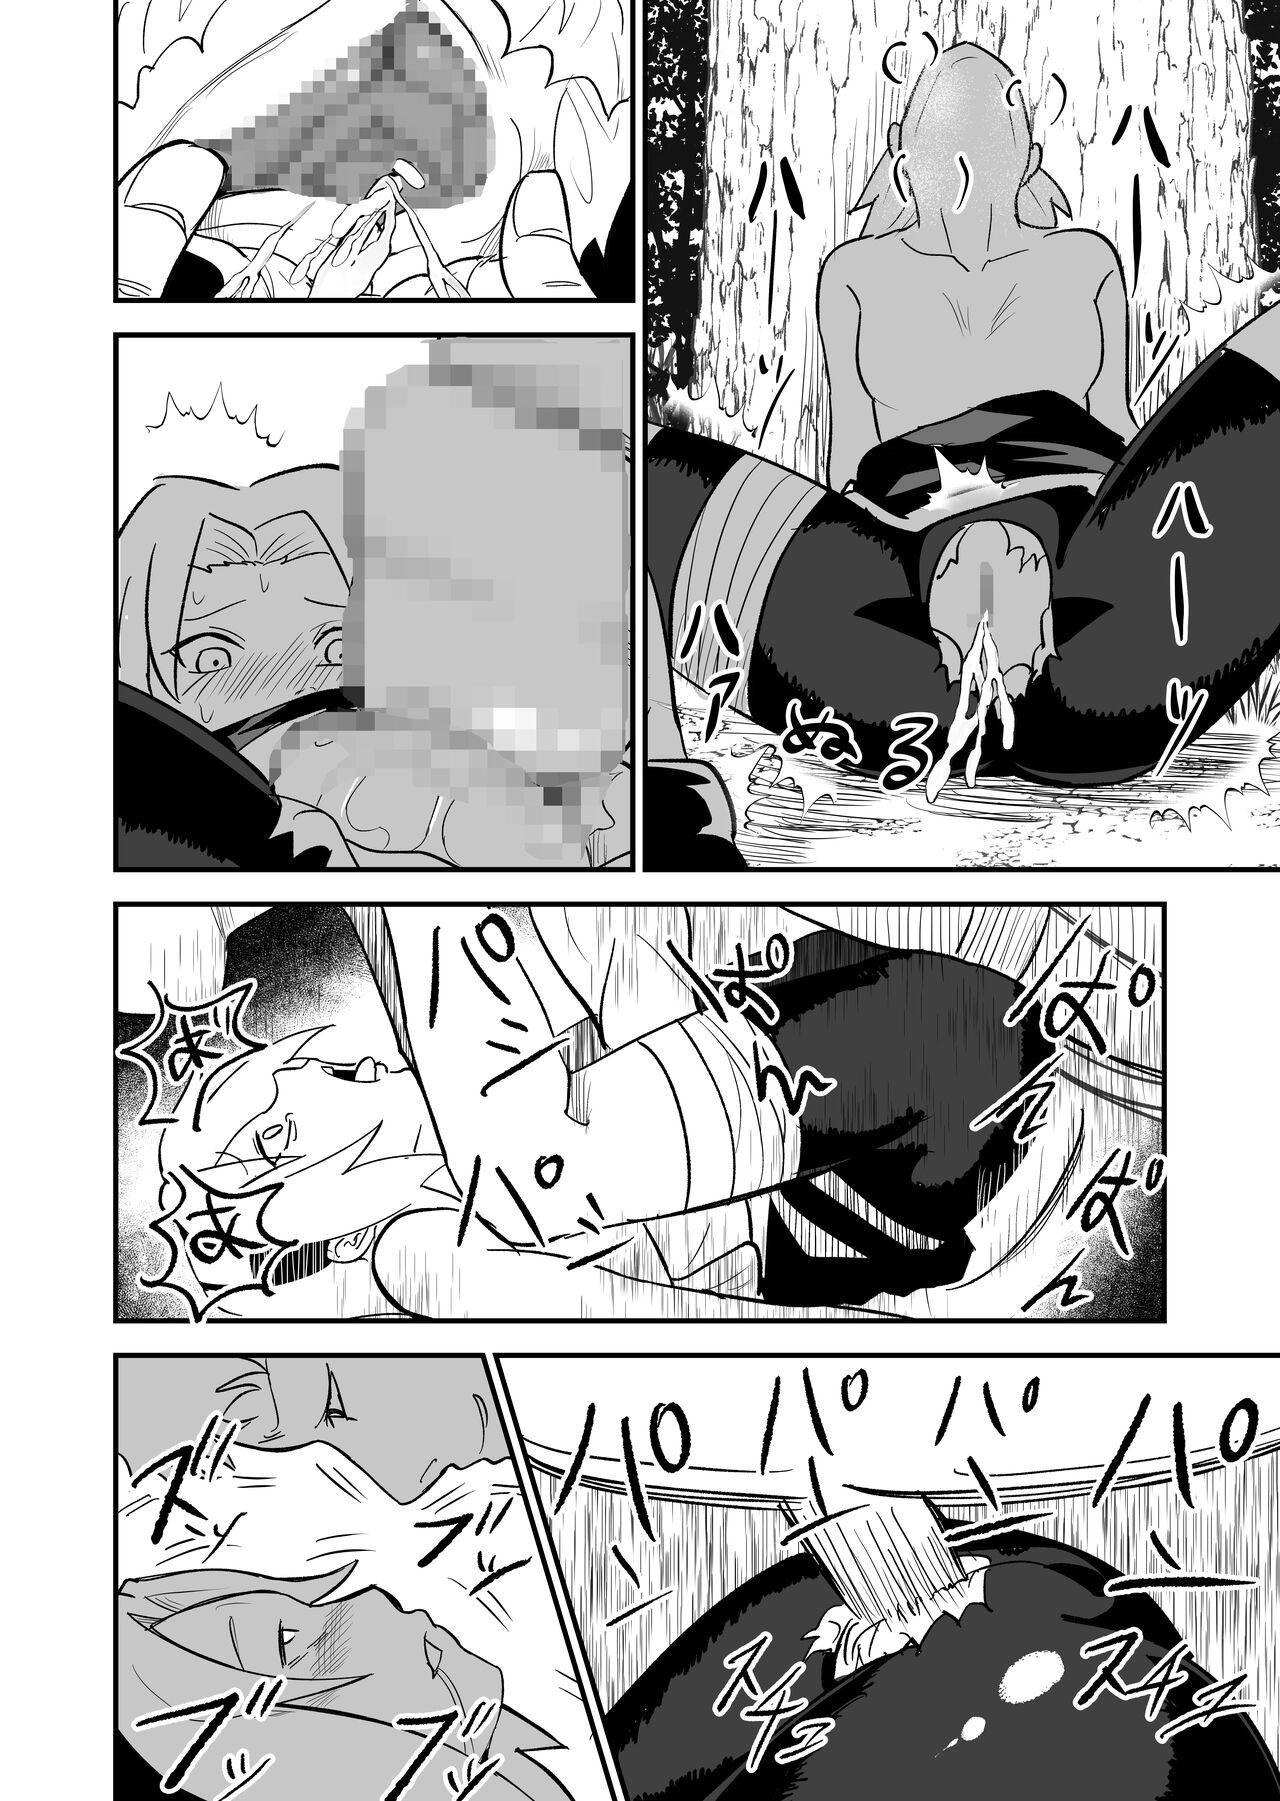 Masterbate 無限月読シリーズ サクラ - Naruto Licking - Page 7